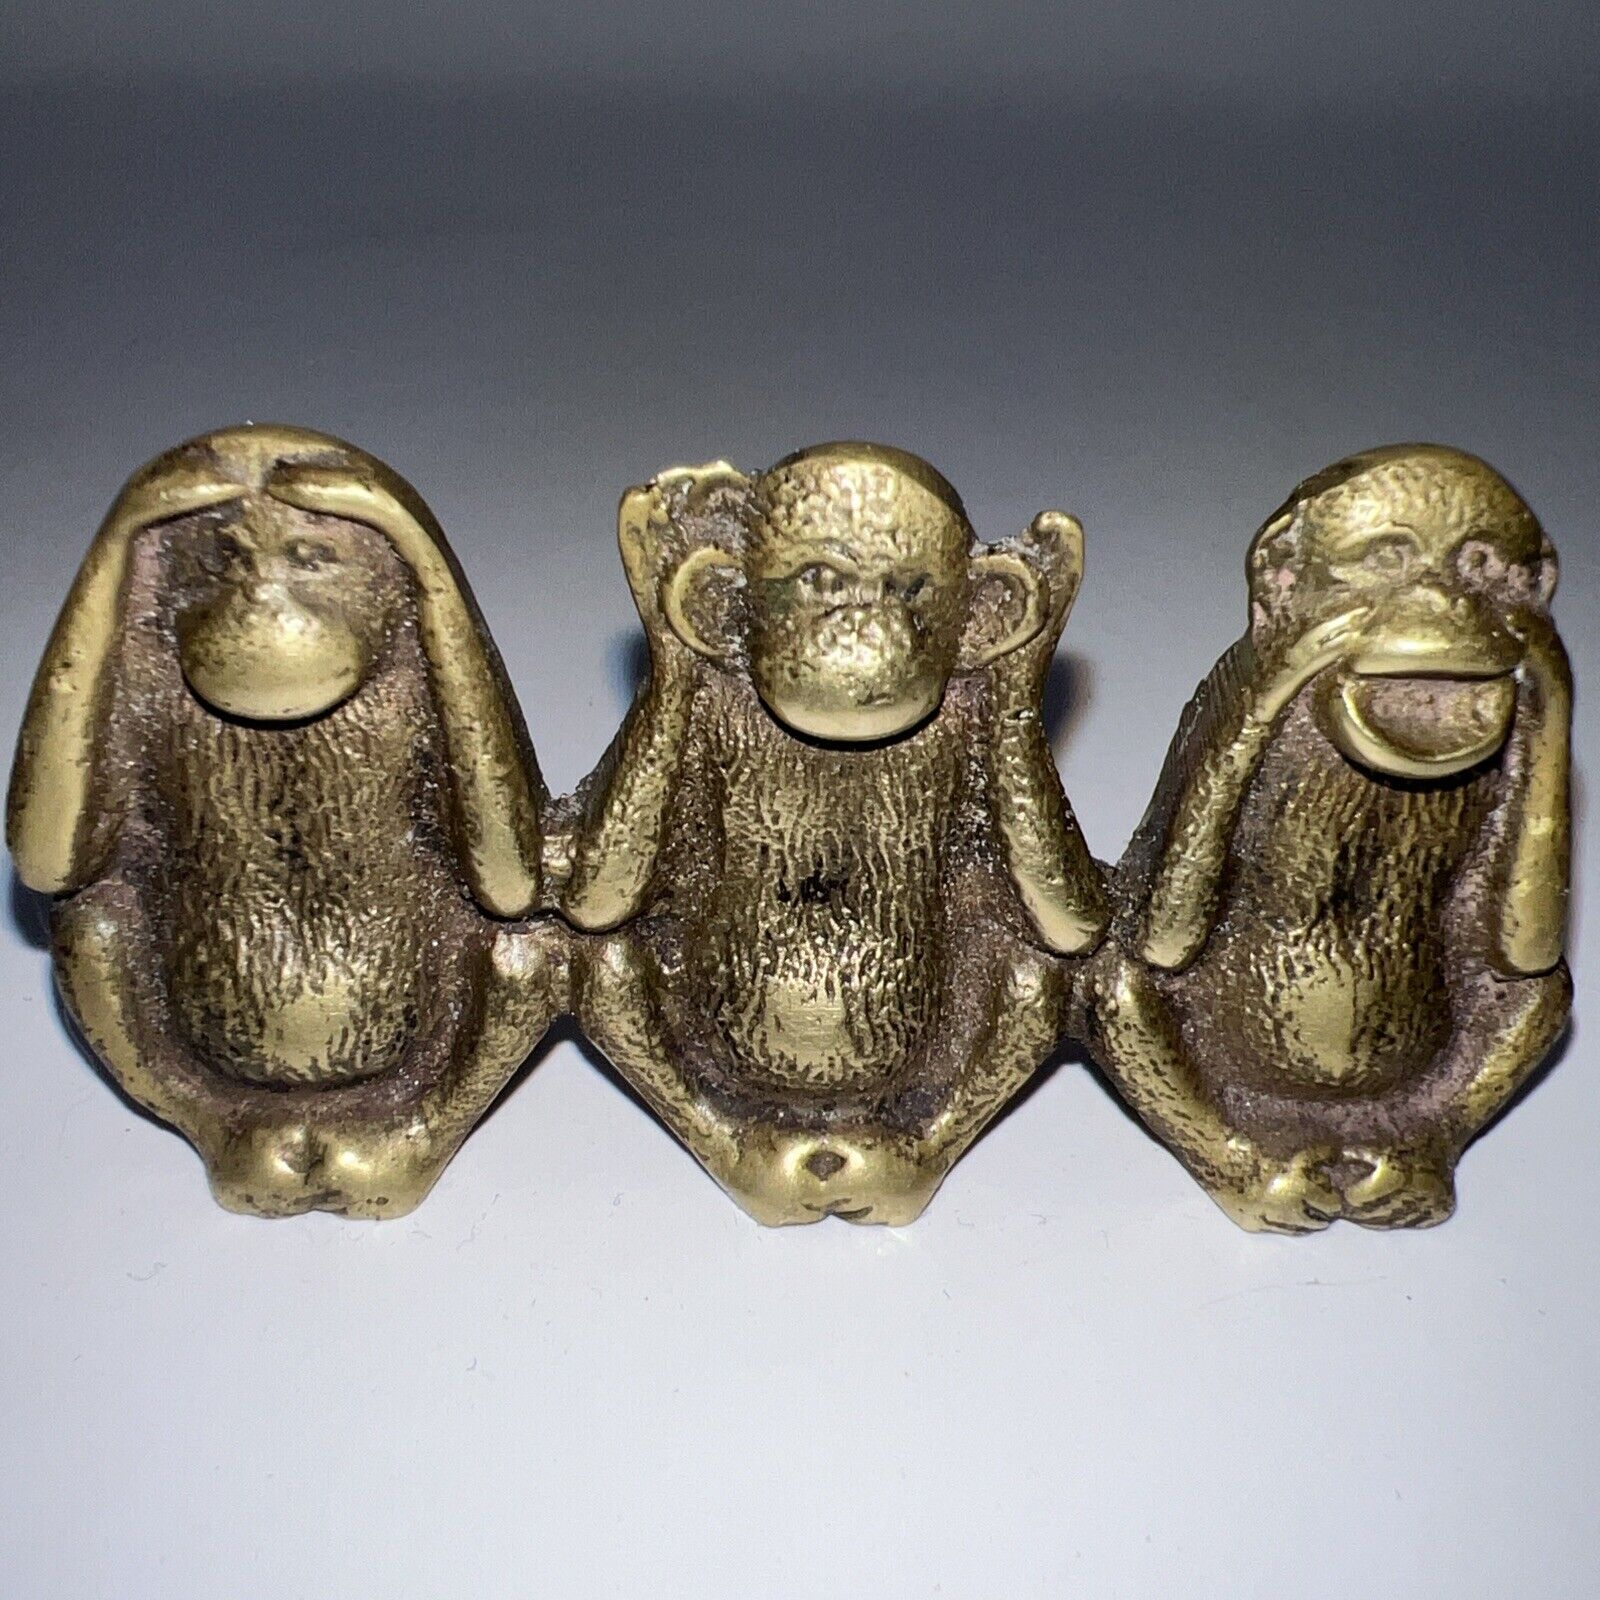 VTG 3 Small Wise Brass Monkeys Figurine Paperweight Hear See Speak No Evil